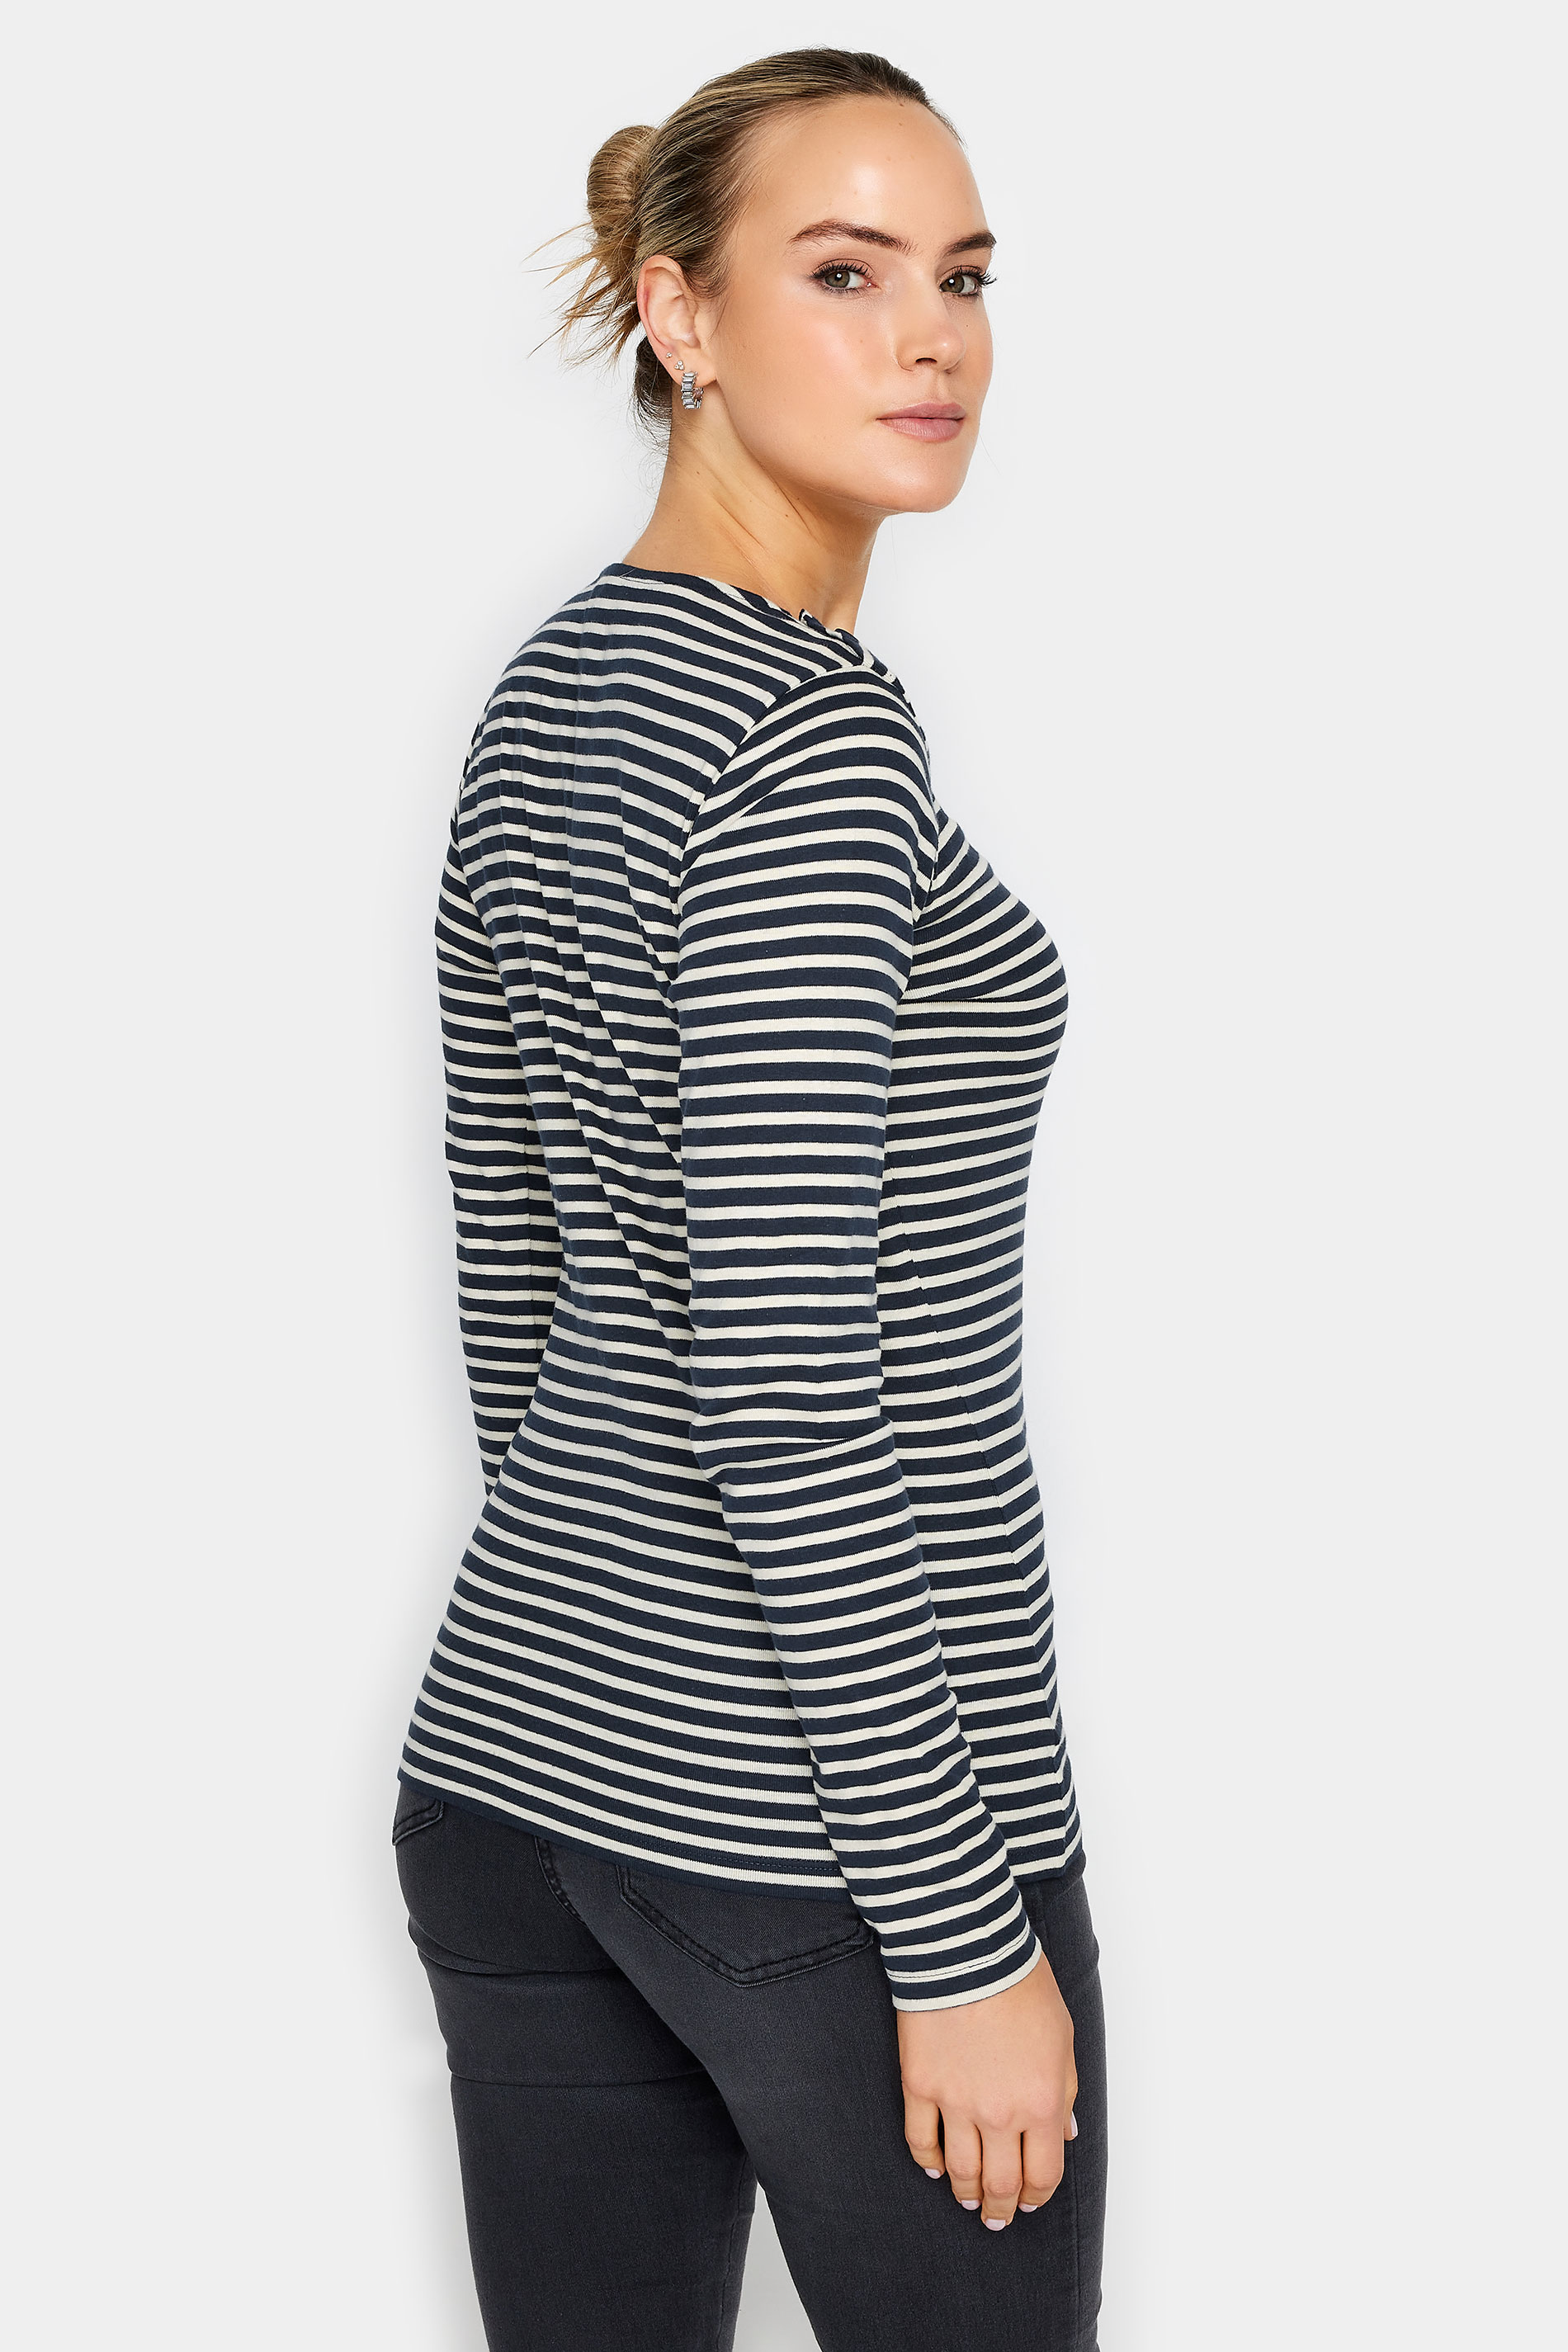 LTS Tall Women's Navy Blue Stripe Print Button T-Shirt | Long Tall Sally  3